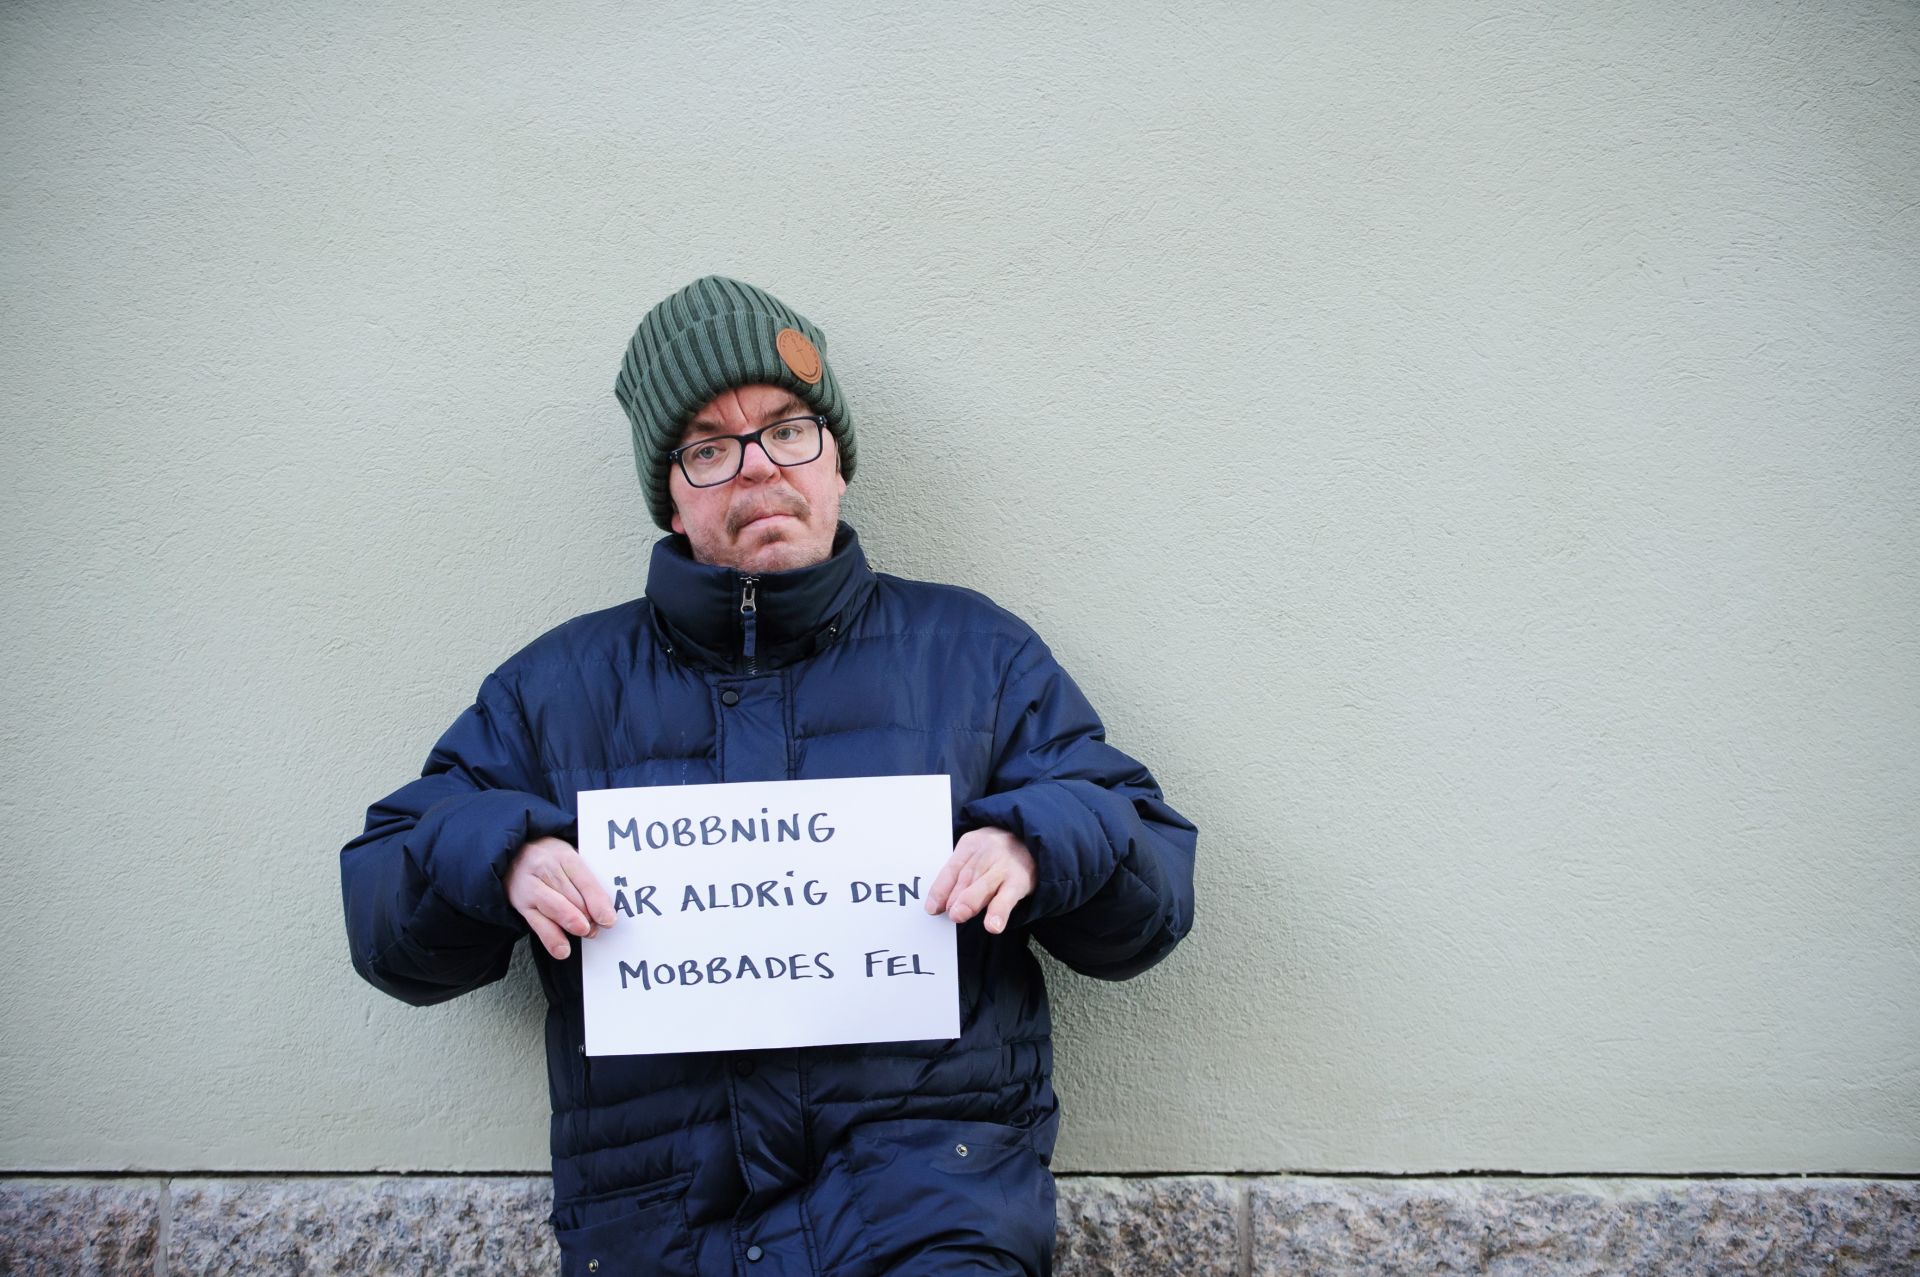 Jonne Tallberg med en skylt med texten Mobbning är aldrig den mobbades fel - vågrätt foto.